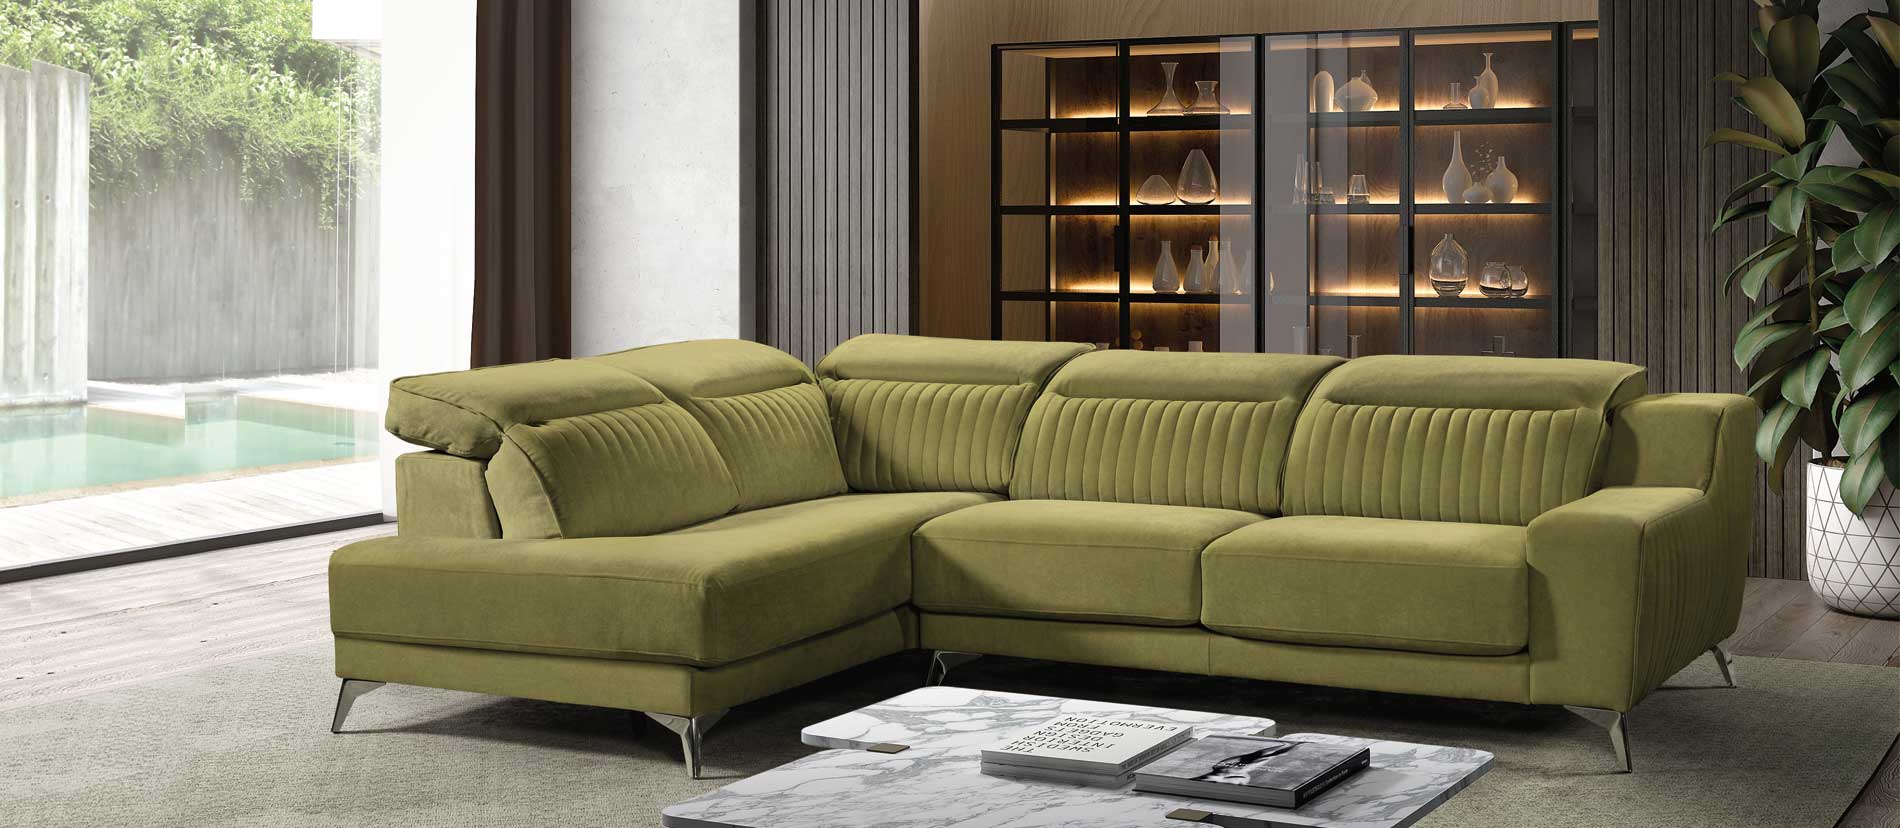 Los sofás de diseño que vienen